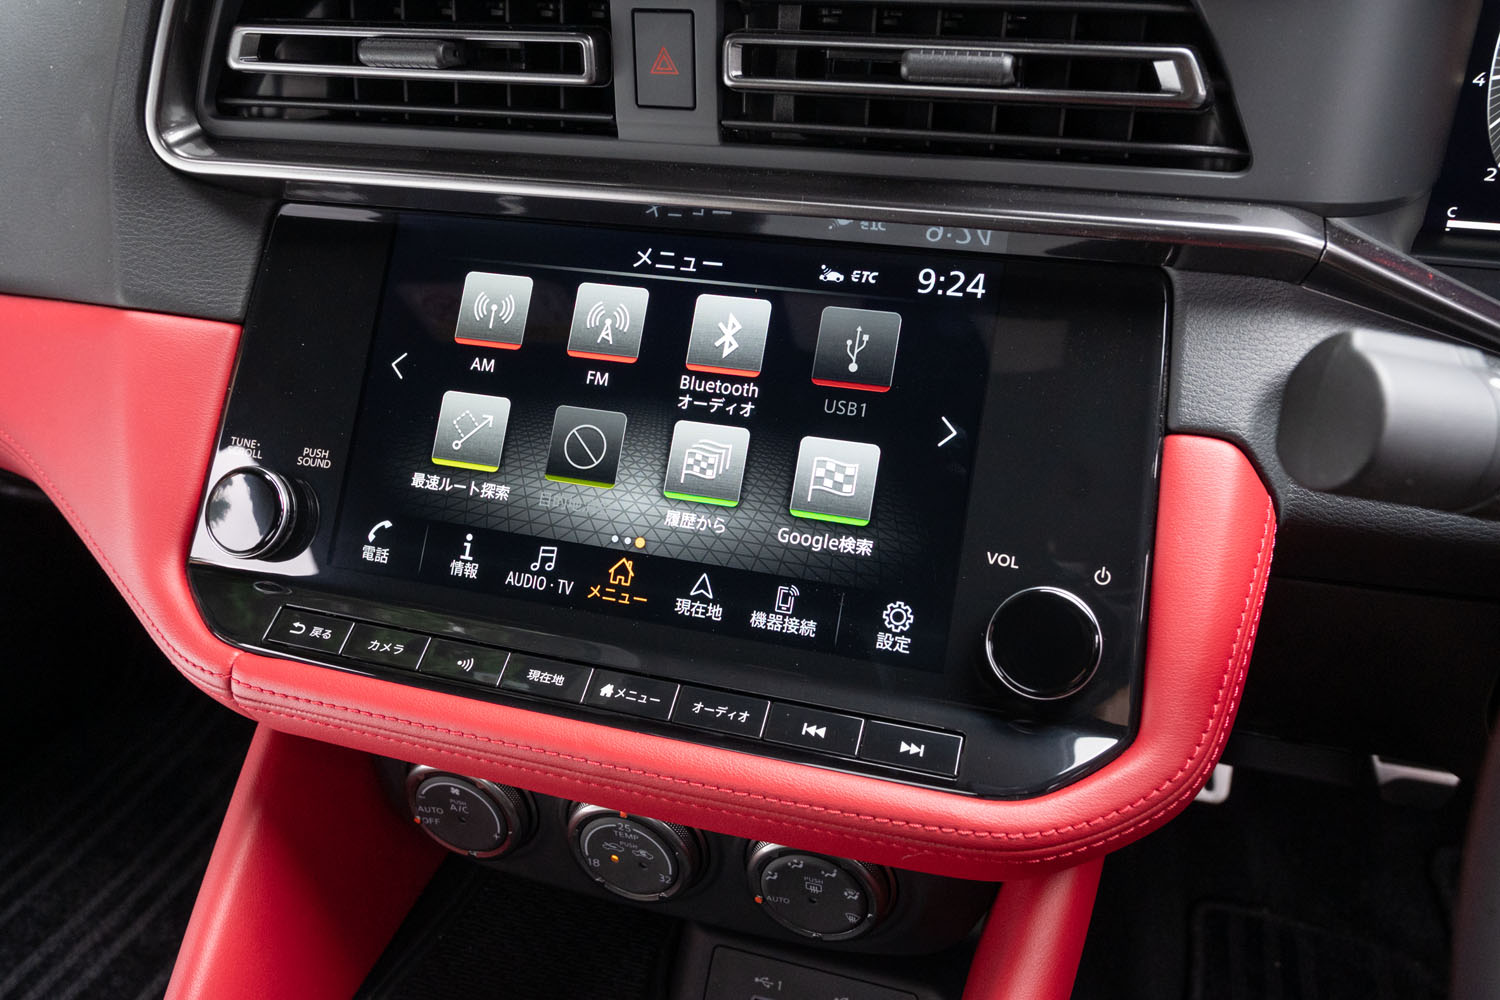 「NissanConnectナビゲーションシステム」の9インチディスプレイ。「Apple CarPlay」や「Android Auto」といった携帯端末との連携機能を備えており、センタークラスター下段の収納スペースには2個のUSBポート（Type-A、Type-Cがそれぞれ1つずつ）も備わっている。